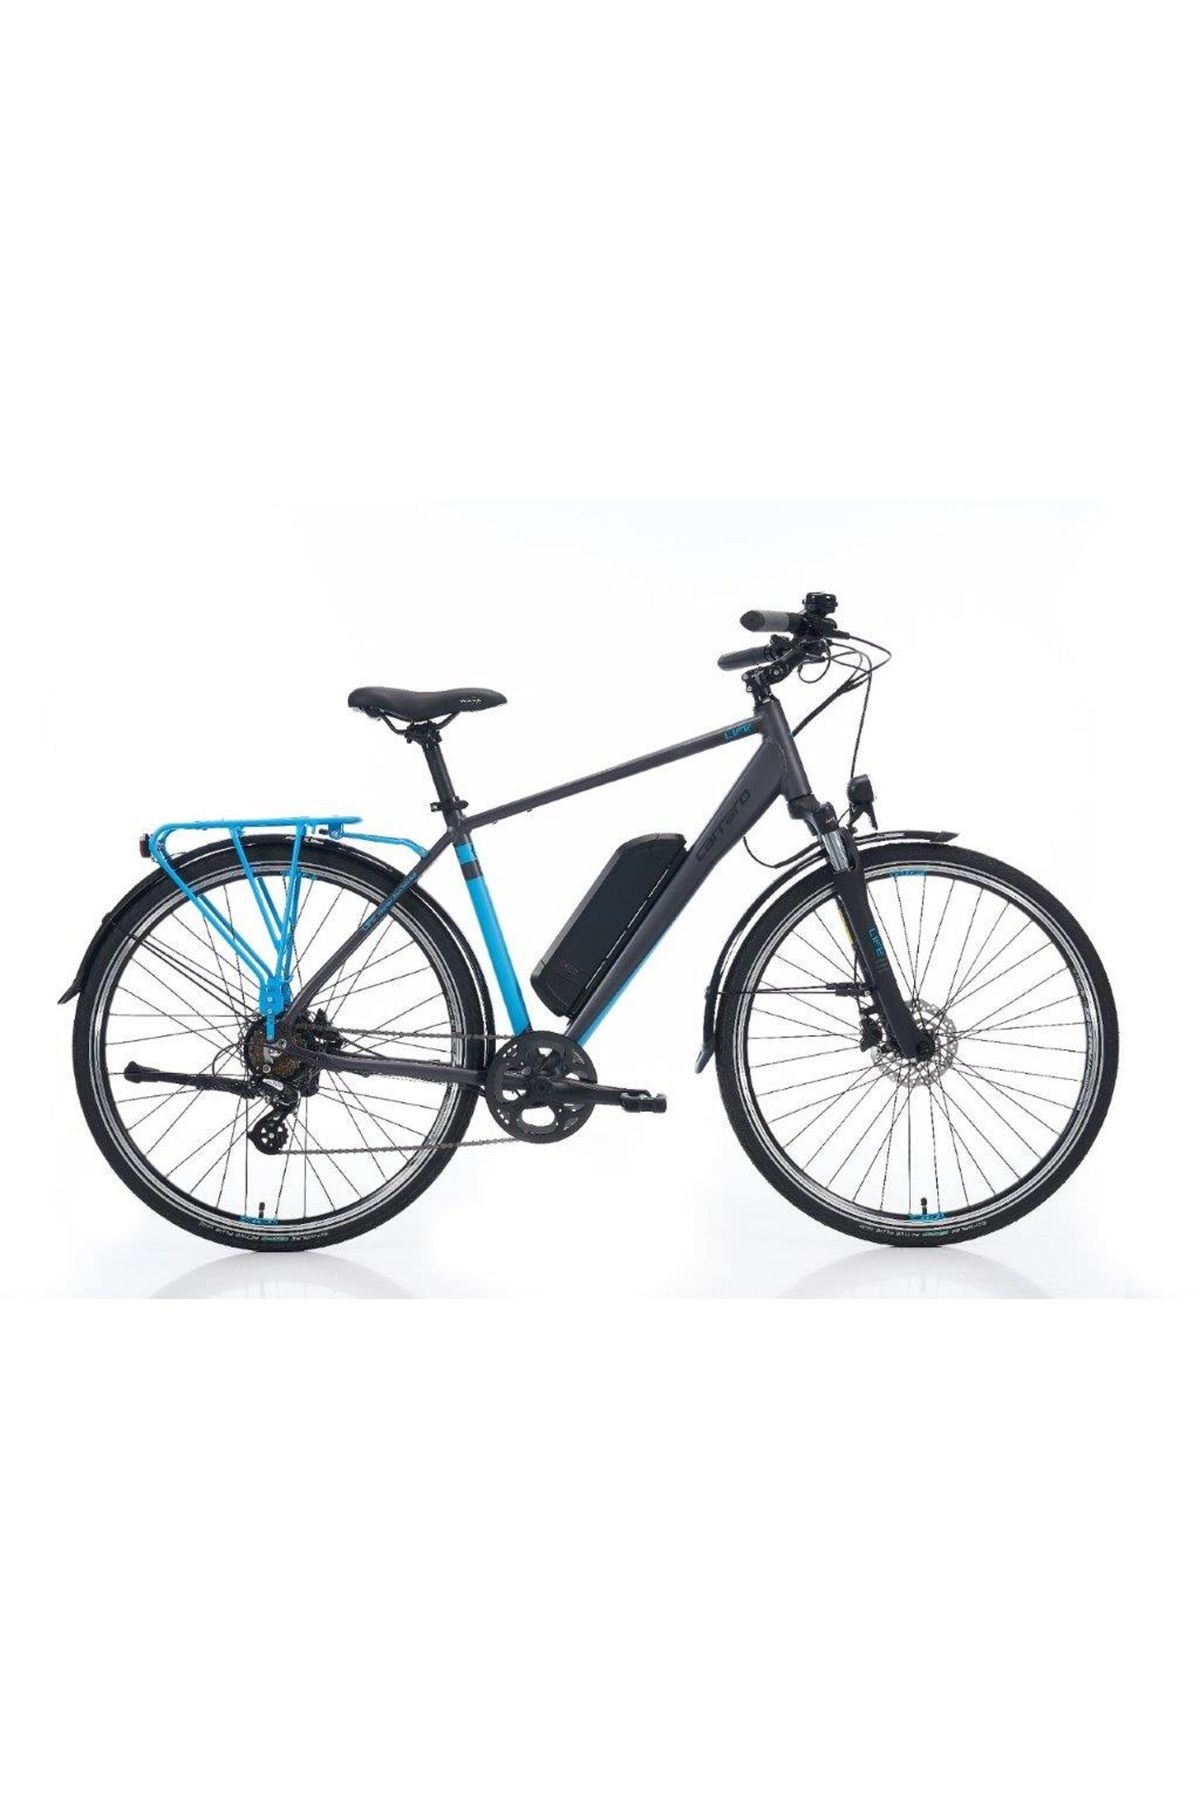 Carraro E-Line eLife 7-V HD 52 Cm Mat Antrasit-Mavi-Siyah Elektrikli Şehir Bisikleti